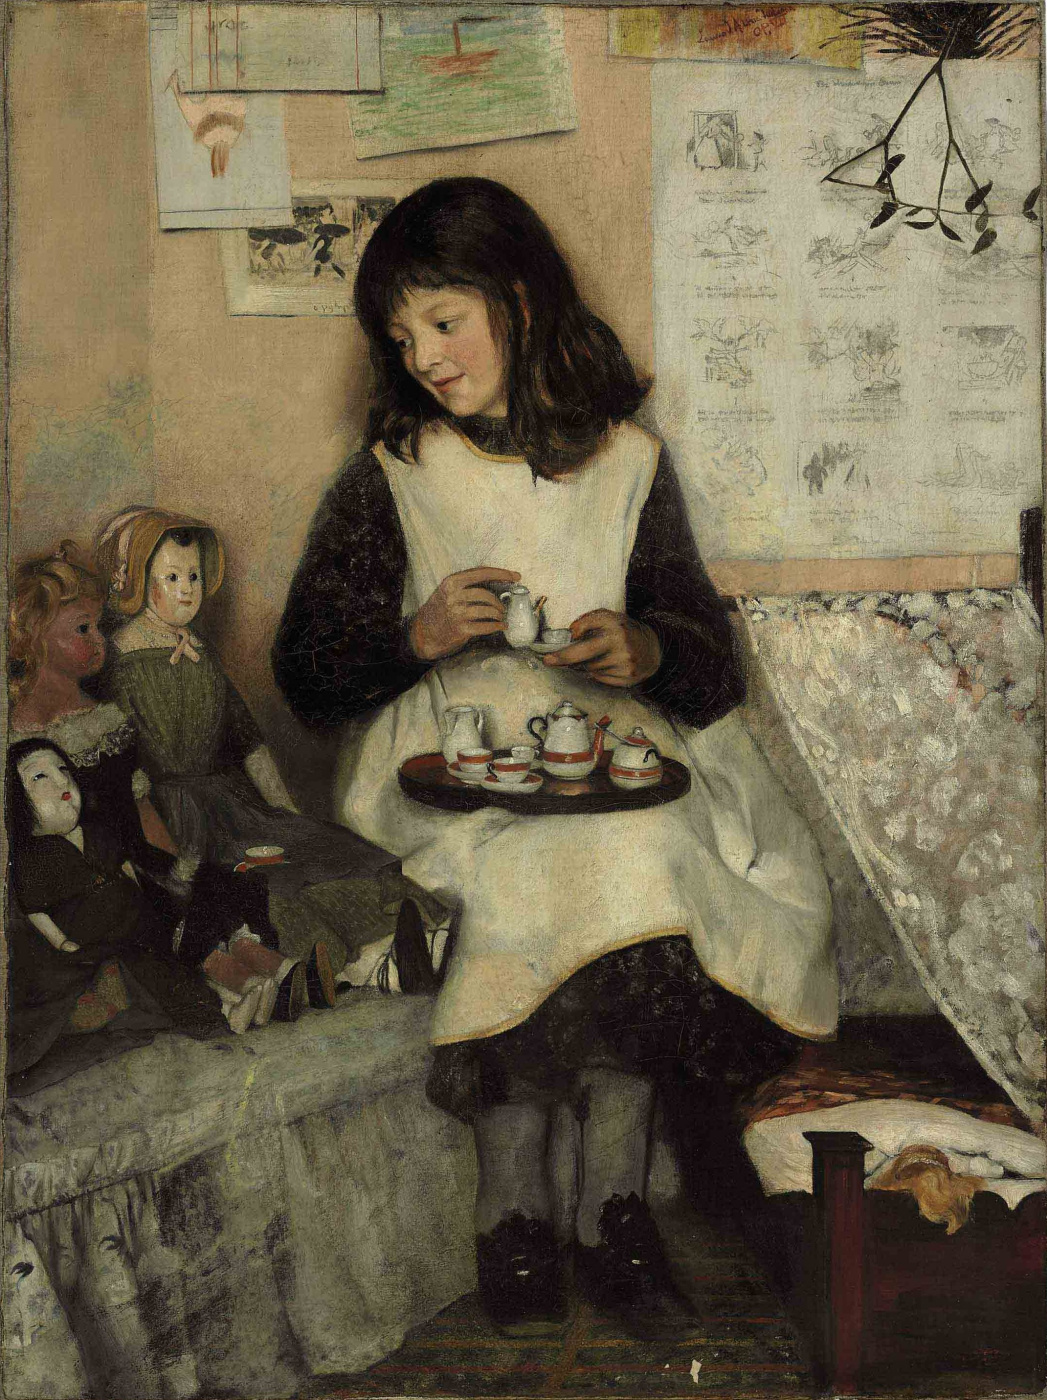 Laura Theresa Alma-Tadema. The tea party